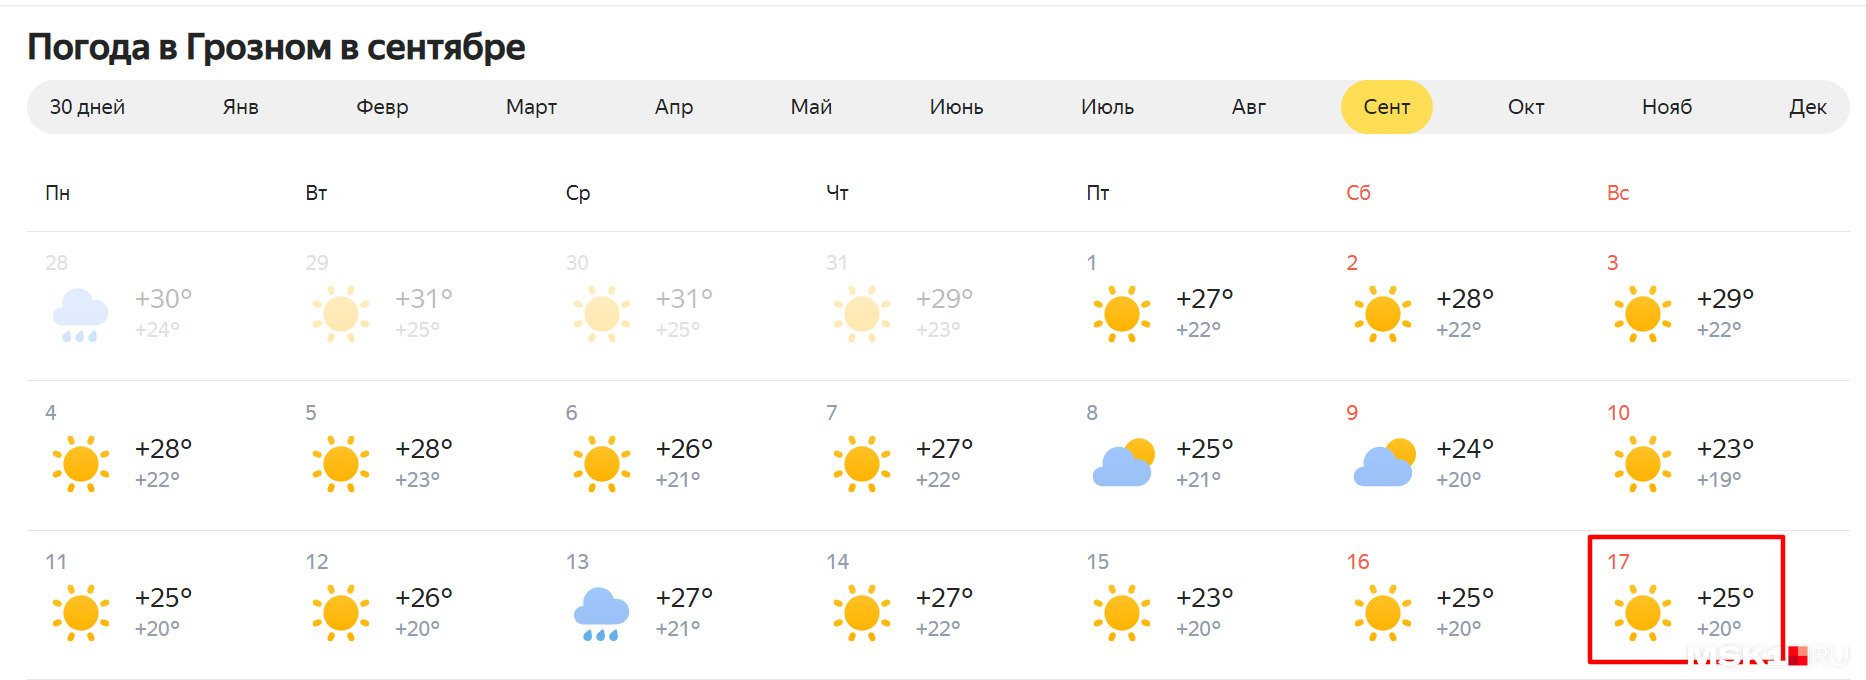 Прогноз погоды в Грозном на сентябрь